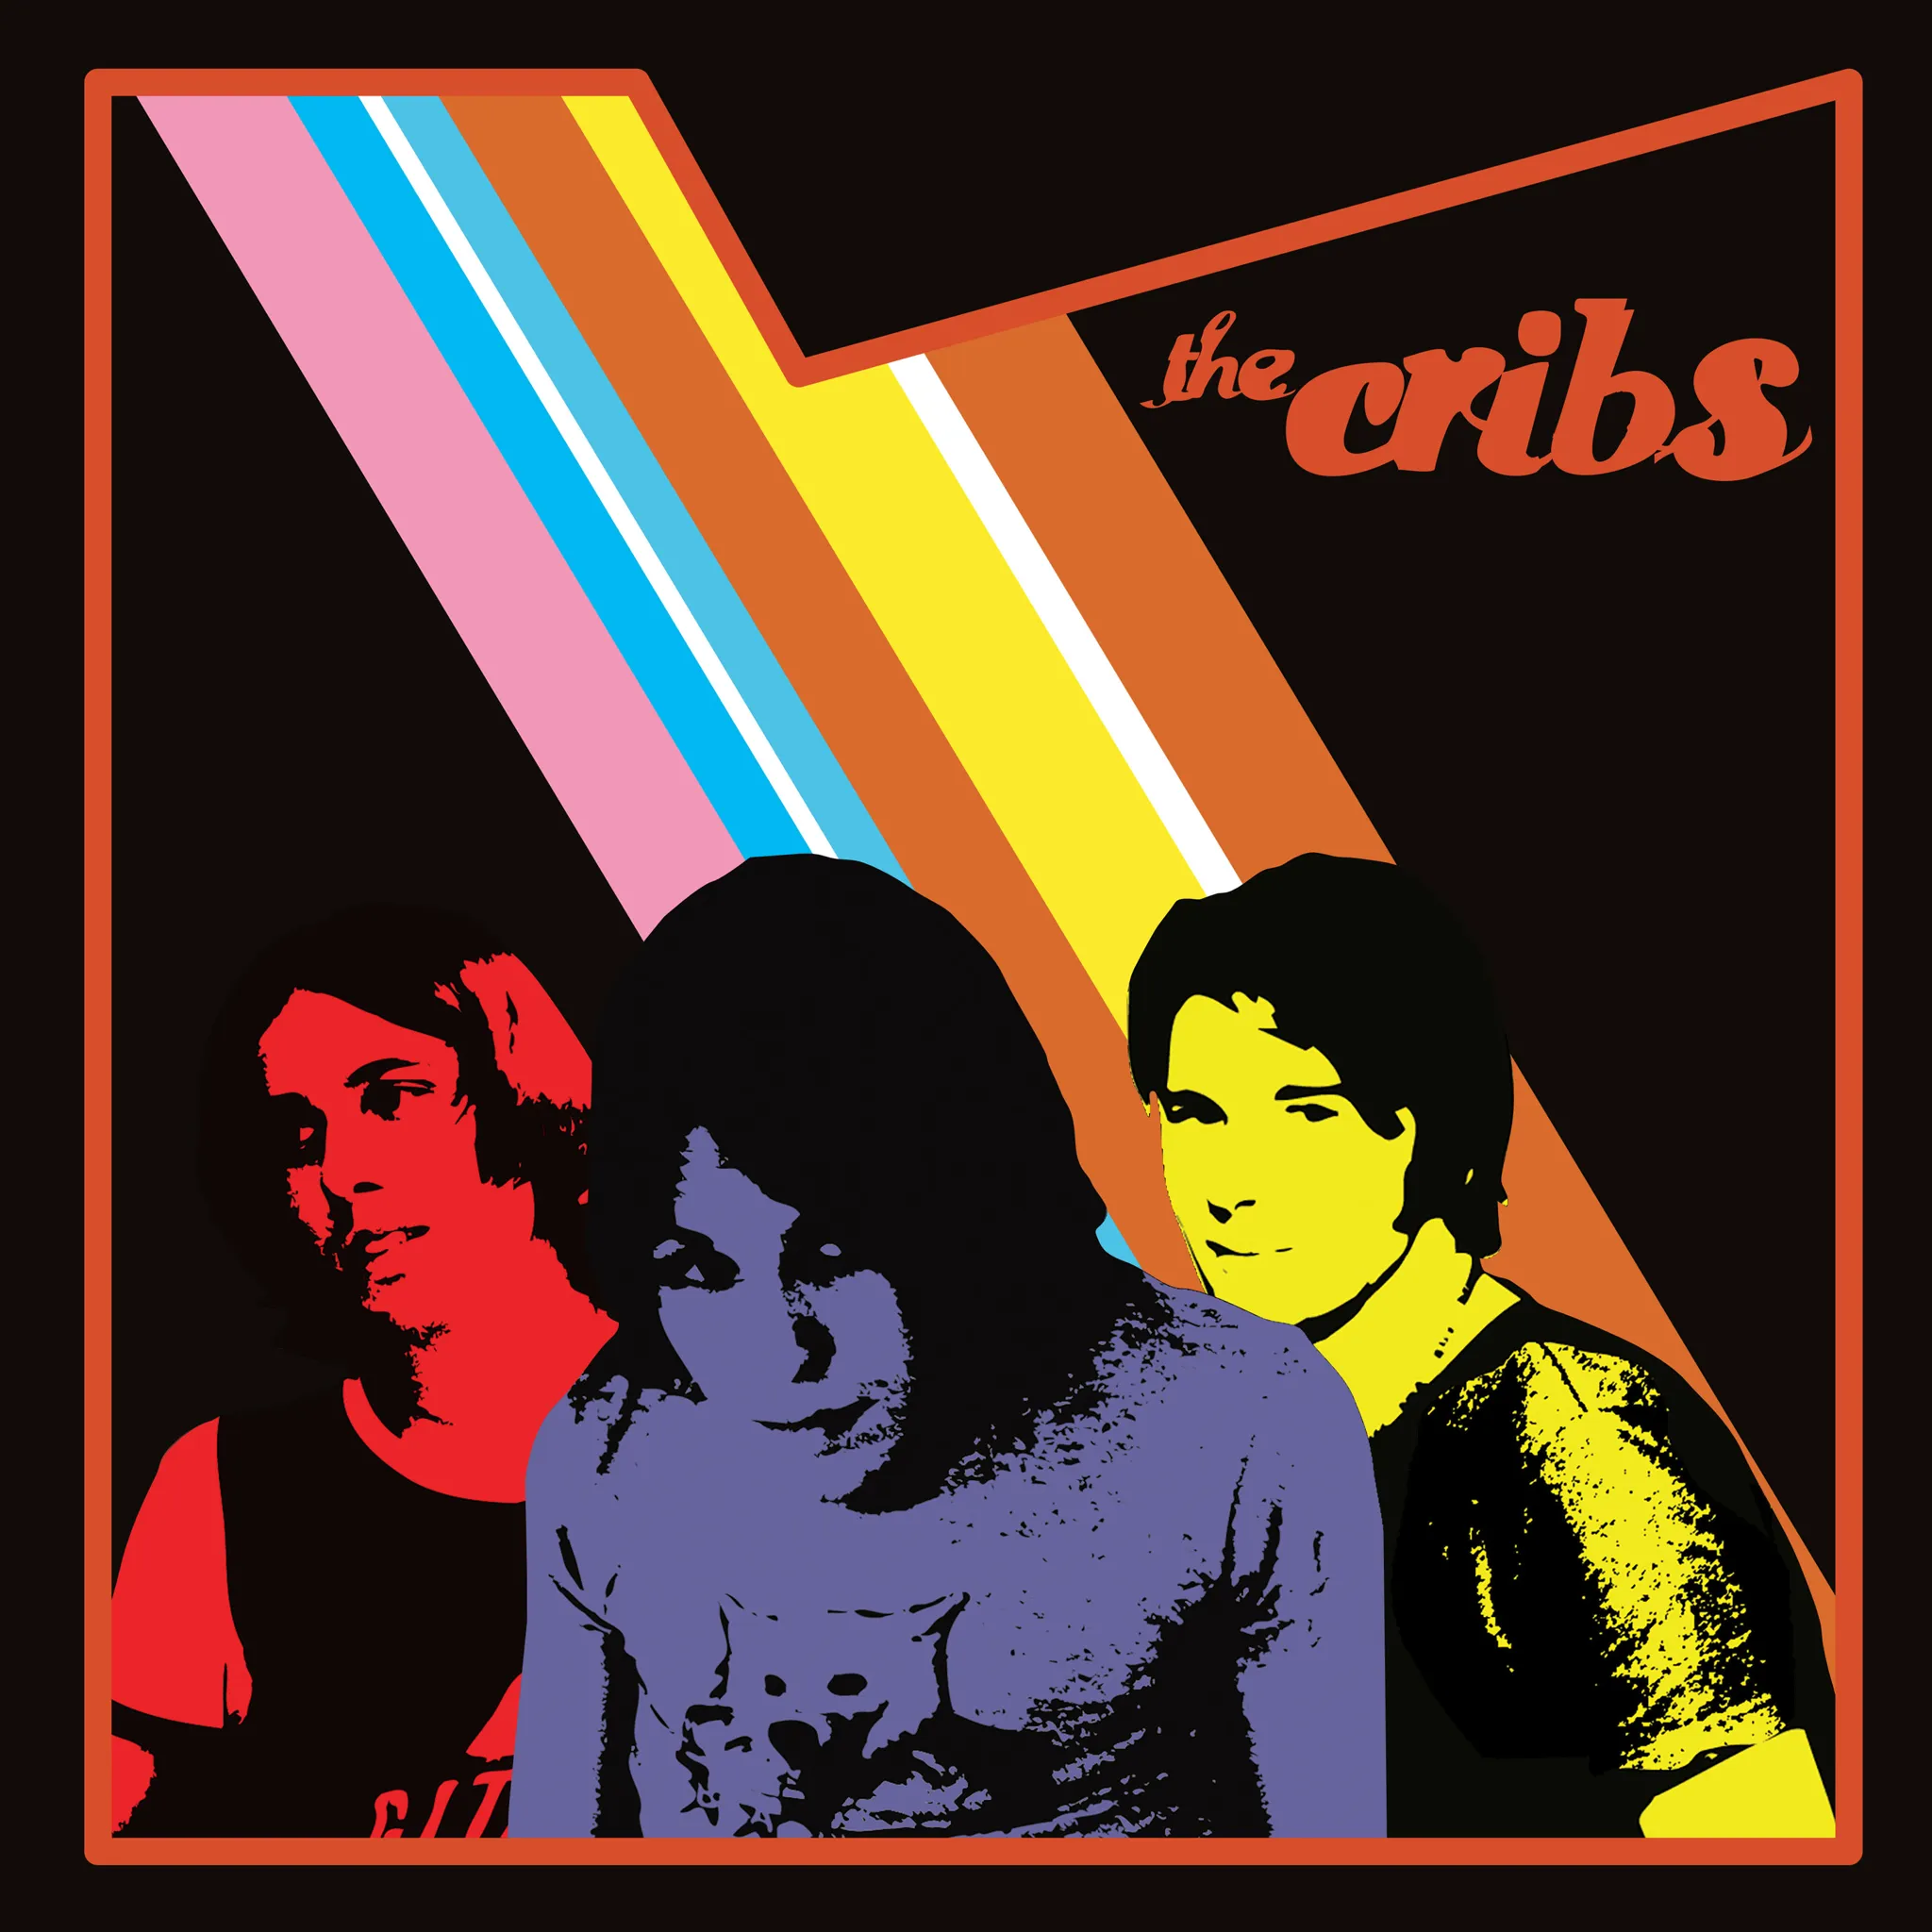 <strong>The Cribs - The Cribs</strong> (Vinyl LP - black)